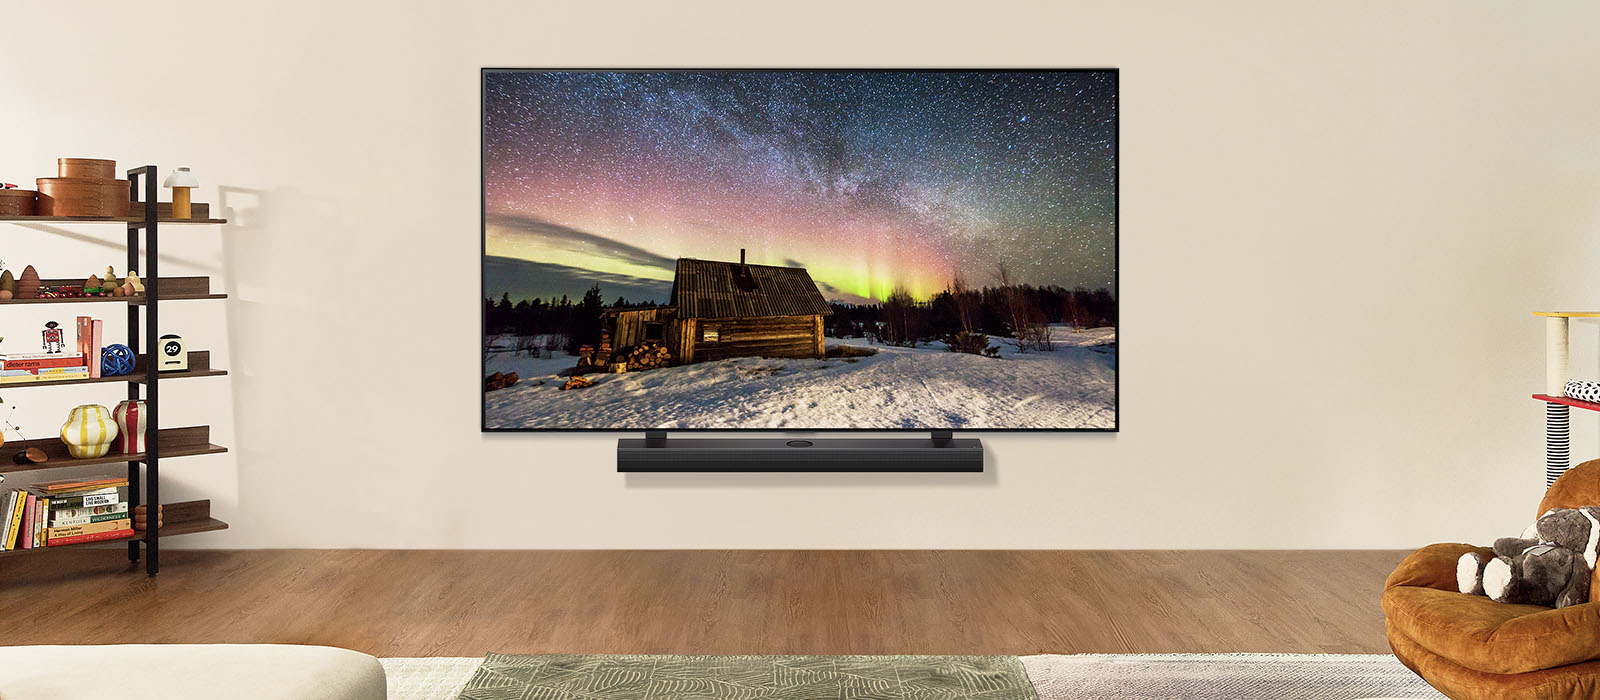 LG TV és LG hangprojektor egy modern nappaliban napközben. A sarki fény képe a képernyőn az ideális fényerővel jelenik meg.